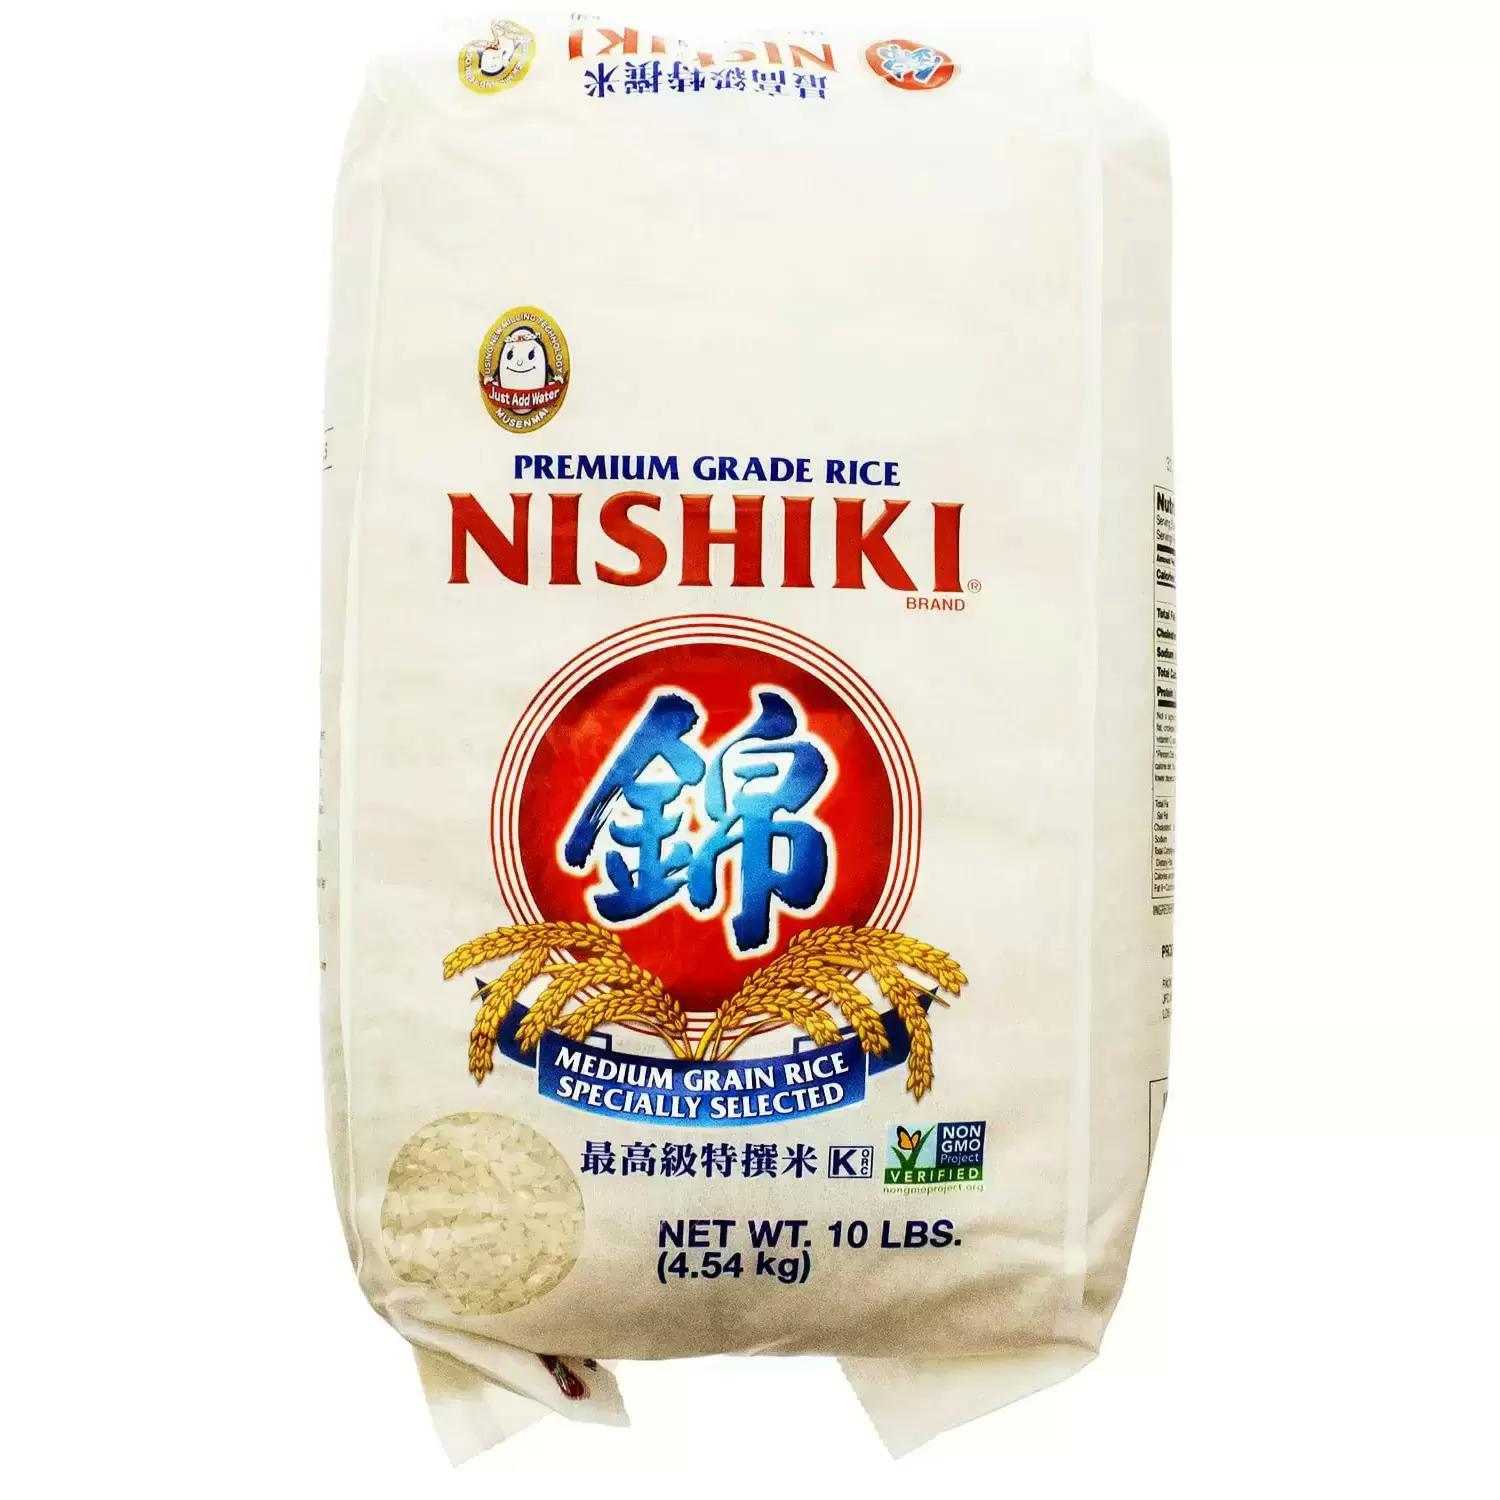 Nishiki Premium Sushi Rice 10Lb Bag for $10.68 Shipped